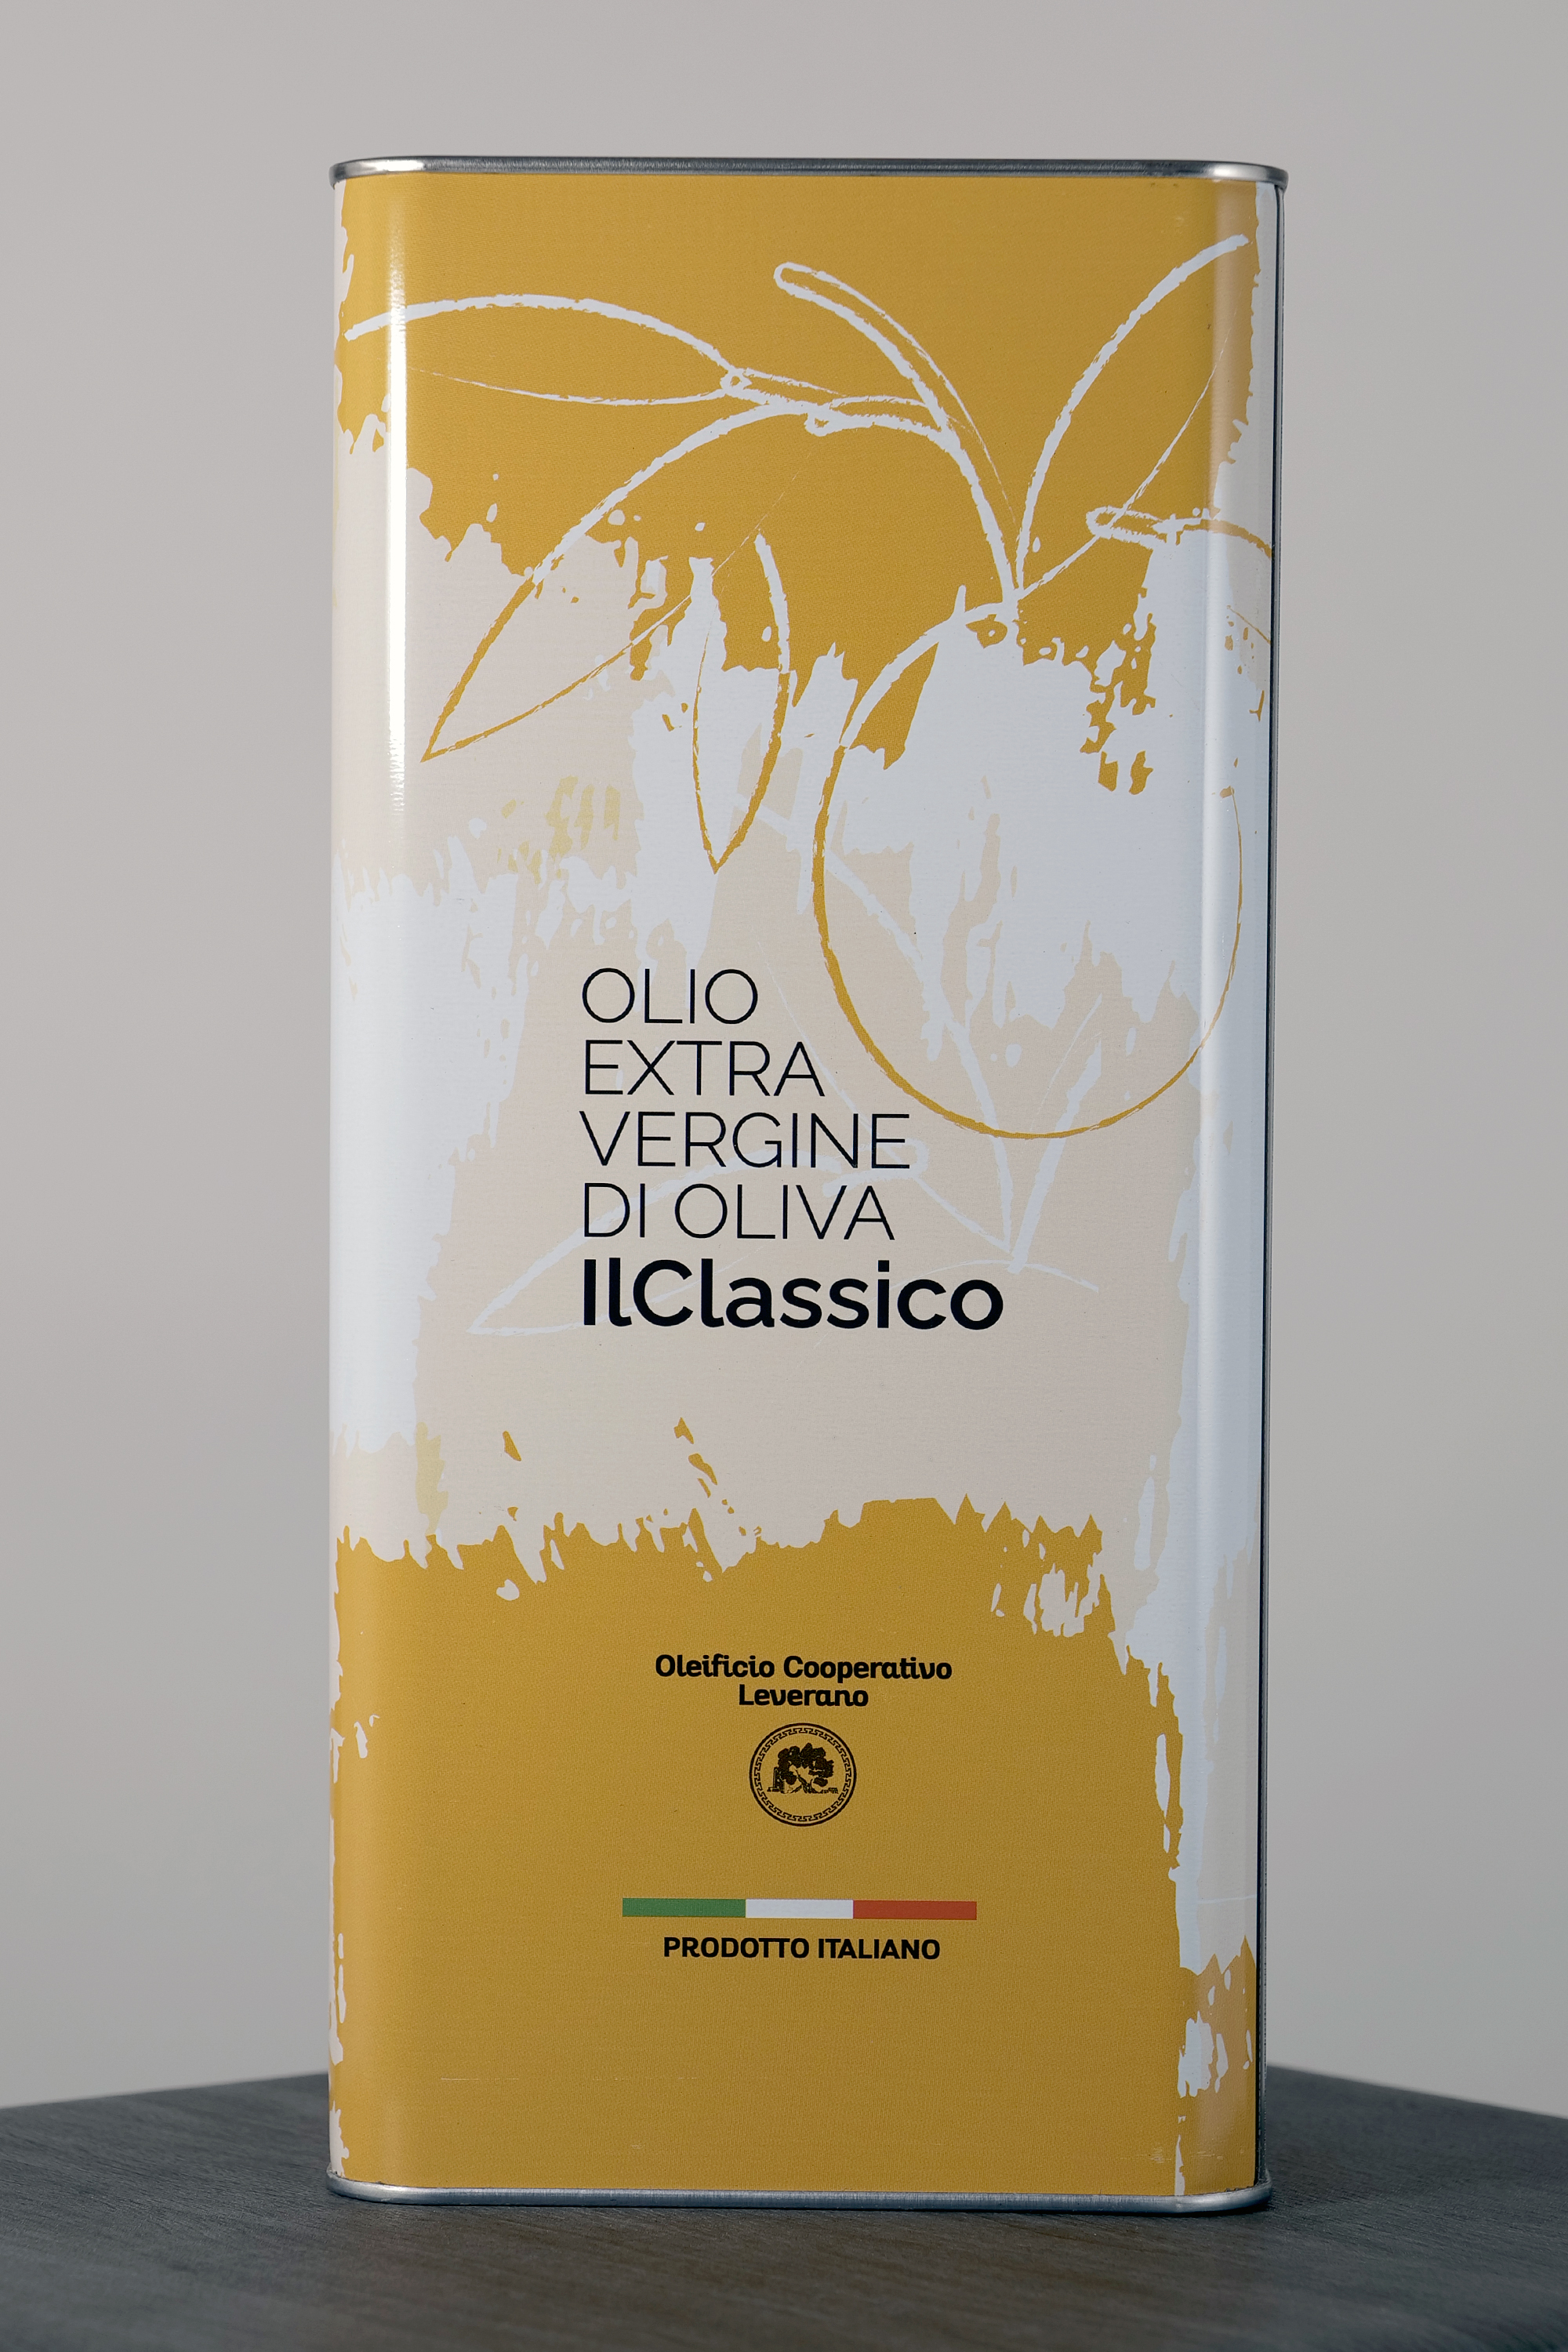 Extravergine d'oliva "IlClassico" - lt. 5,00